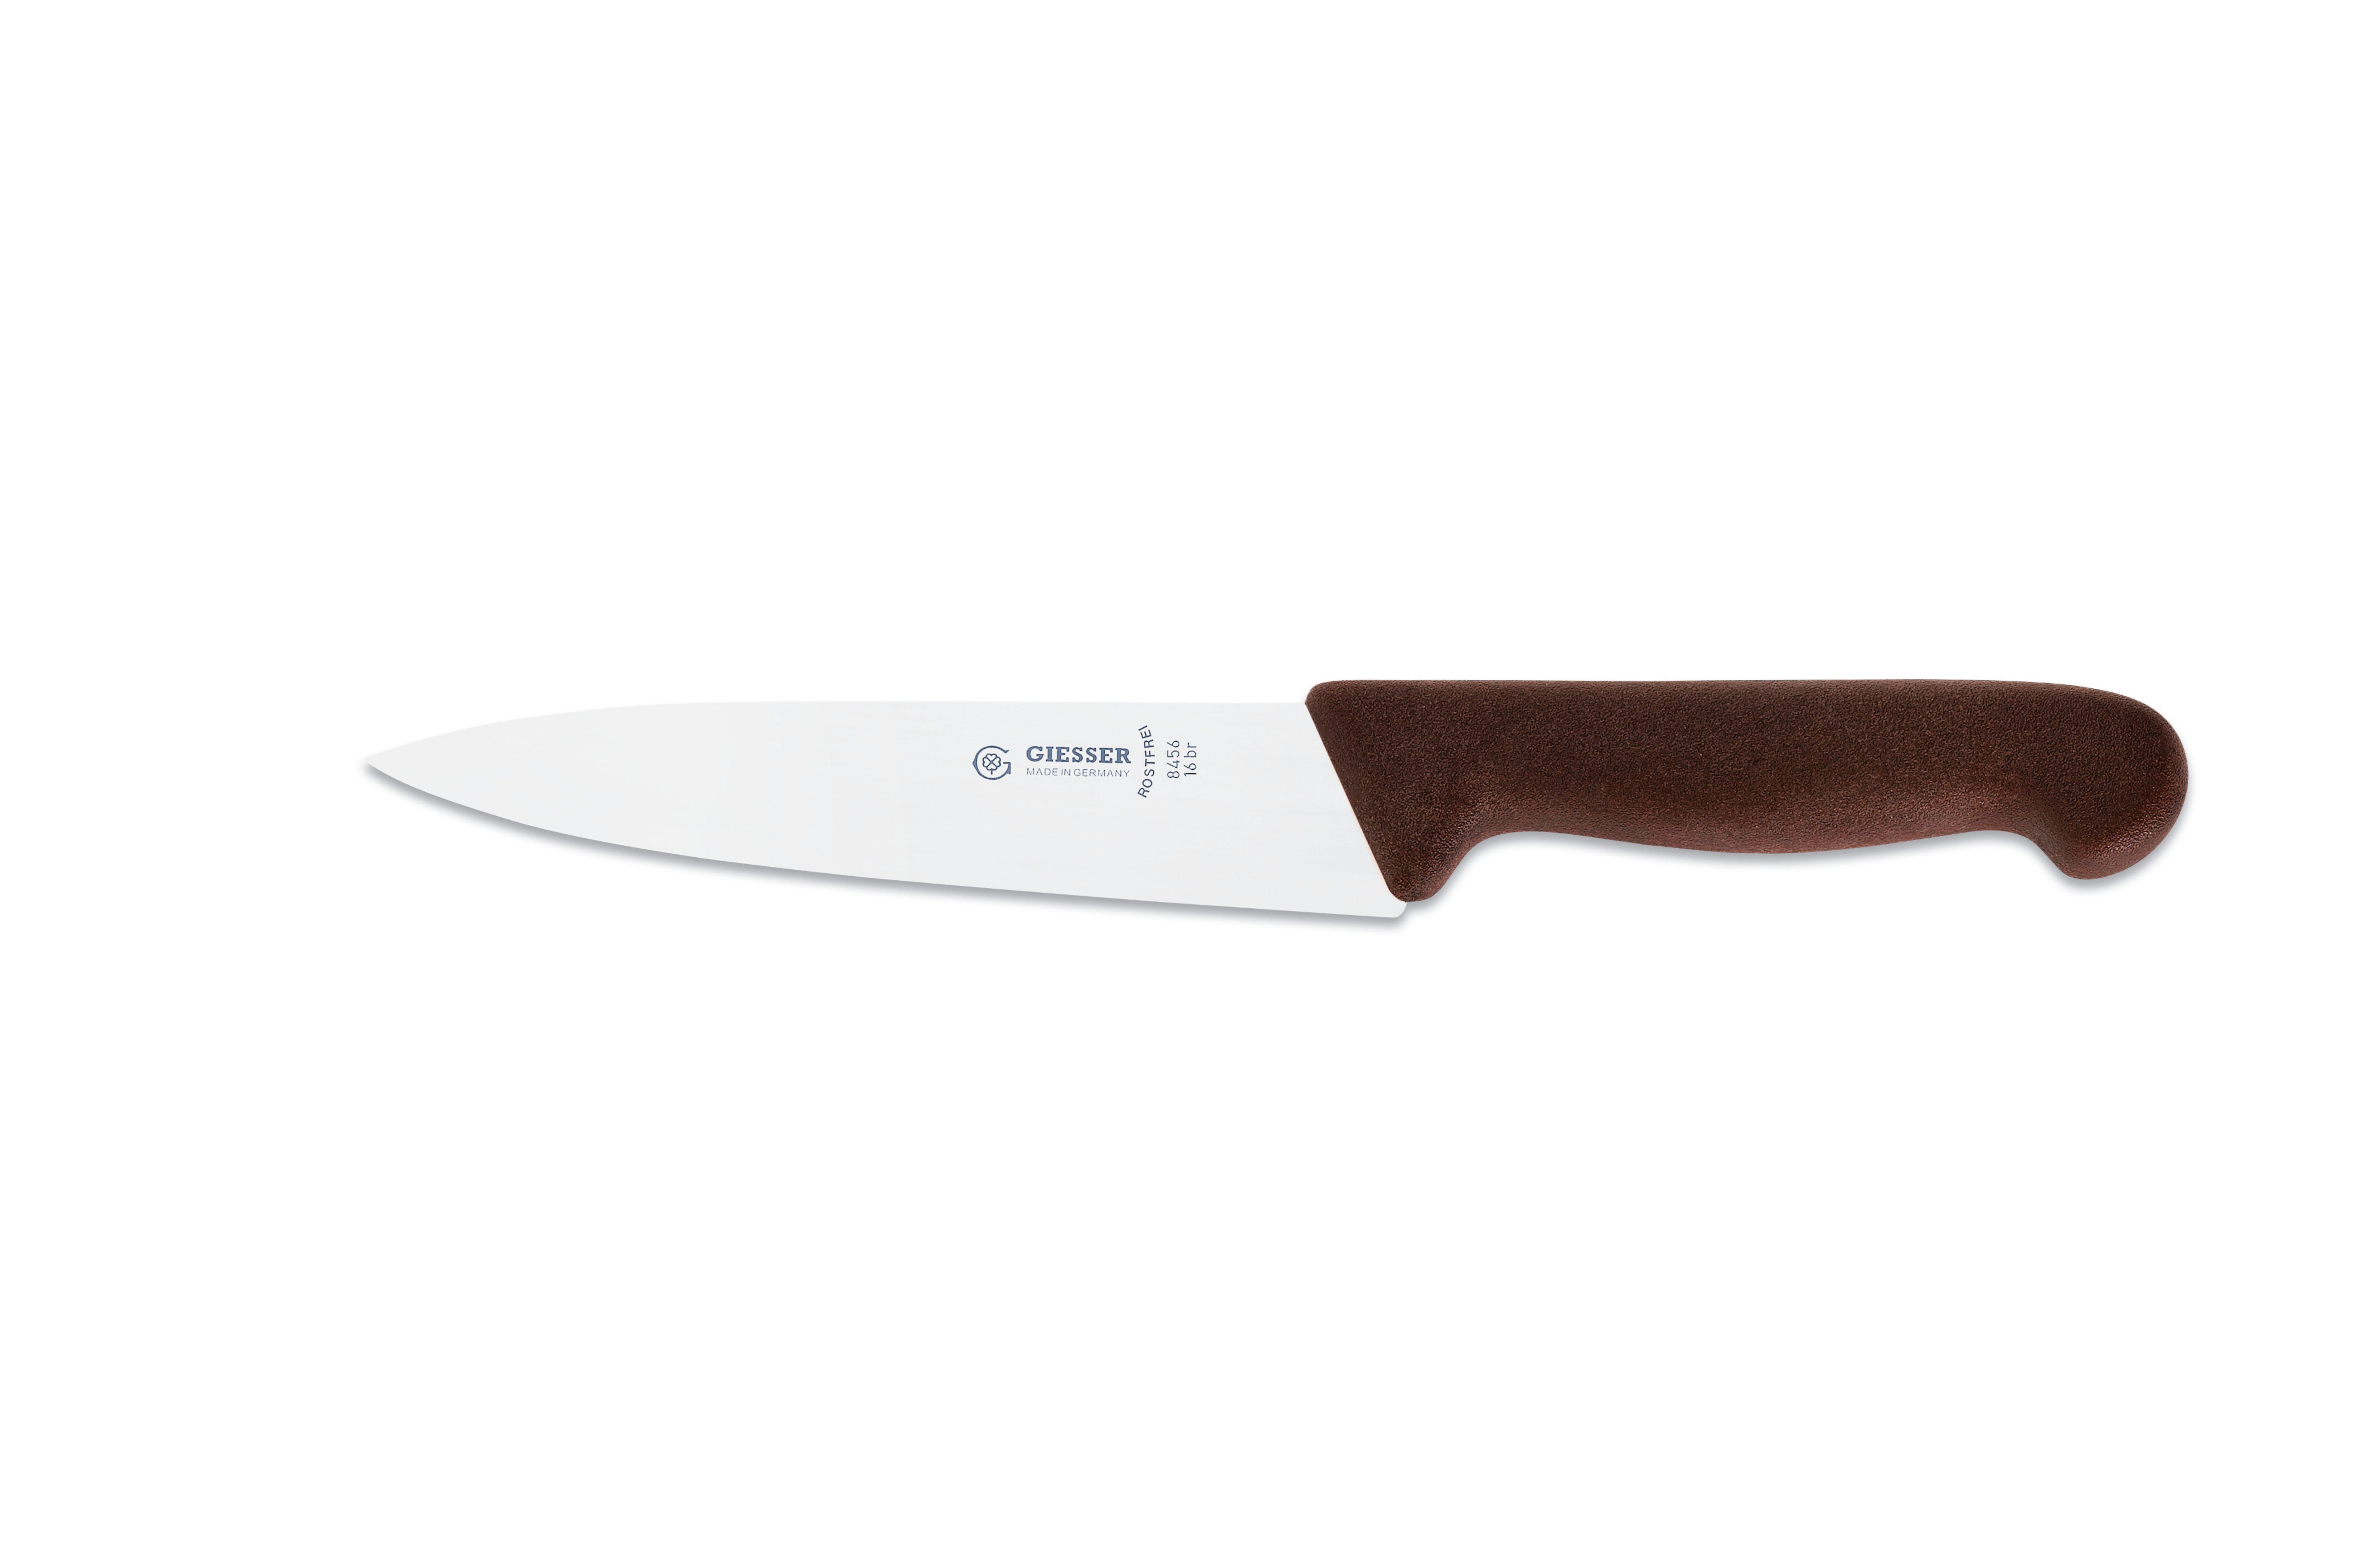 Kochmesser für Messer Ideal braun schmale, Klinge, scharf Küche Handabzug, mittelspitze 8456, jede Giesser Küchenmesser